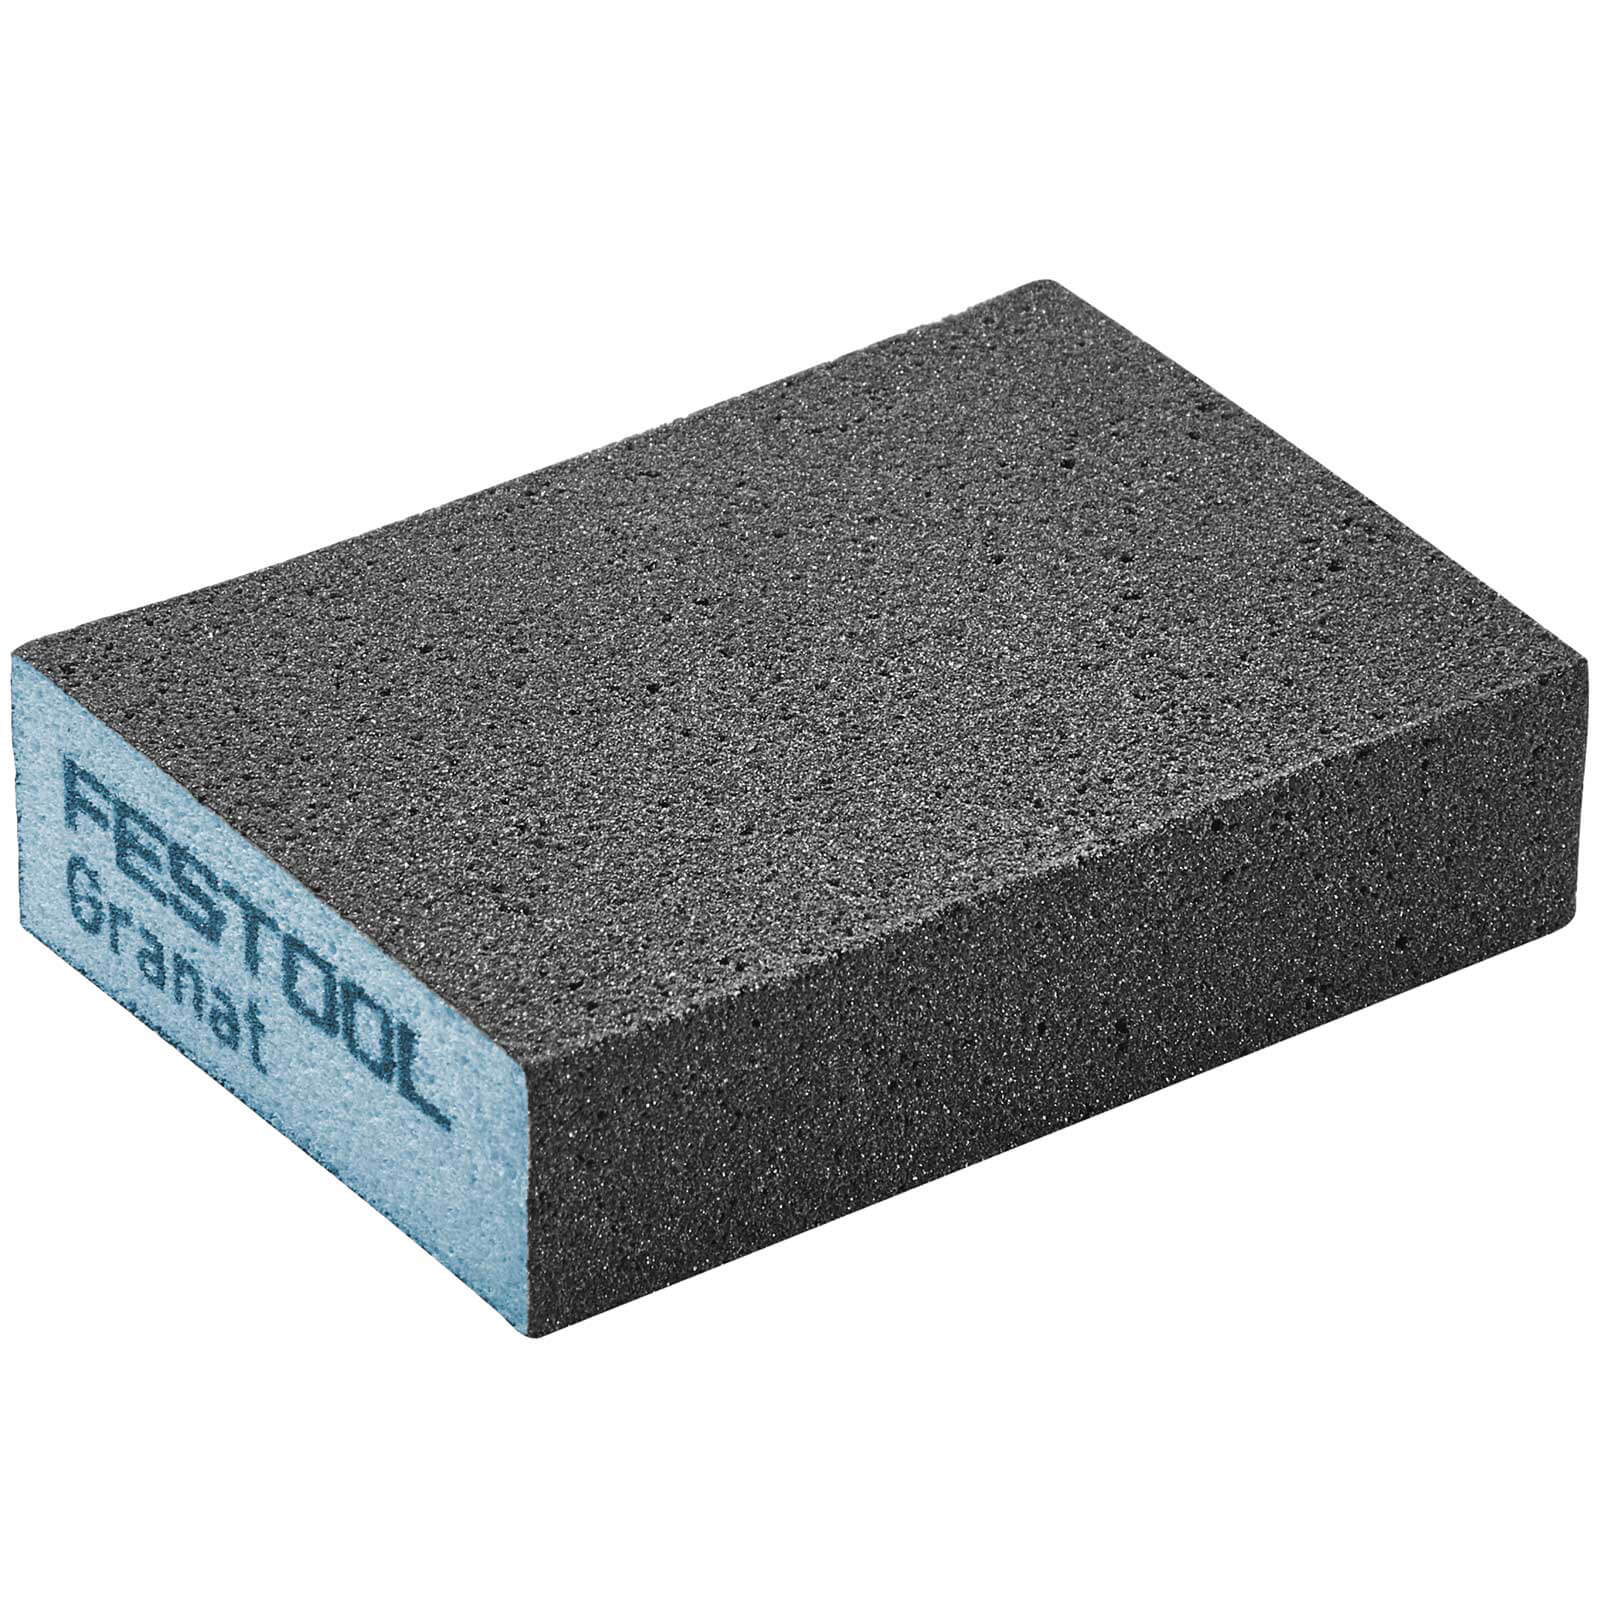 Image of Festool Abrasive Hand Sanding Sponge Block 220g Pack of 6